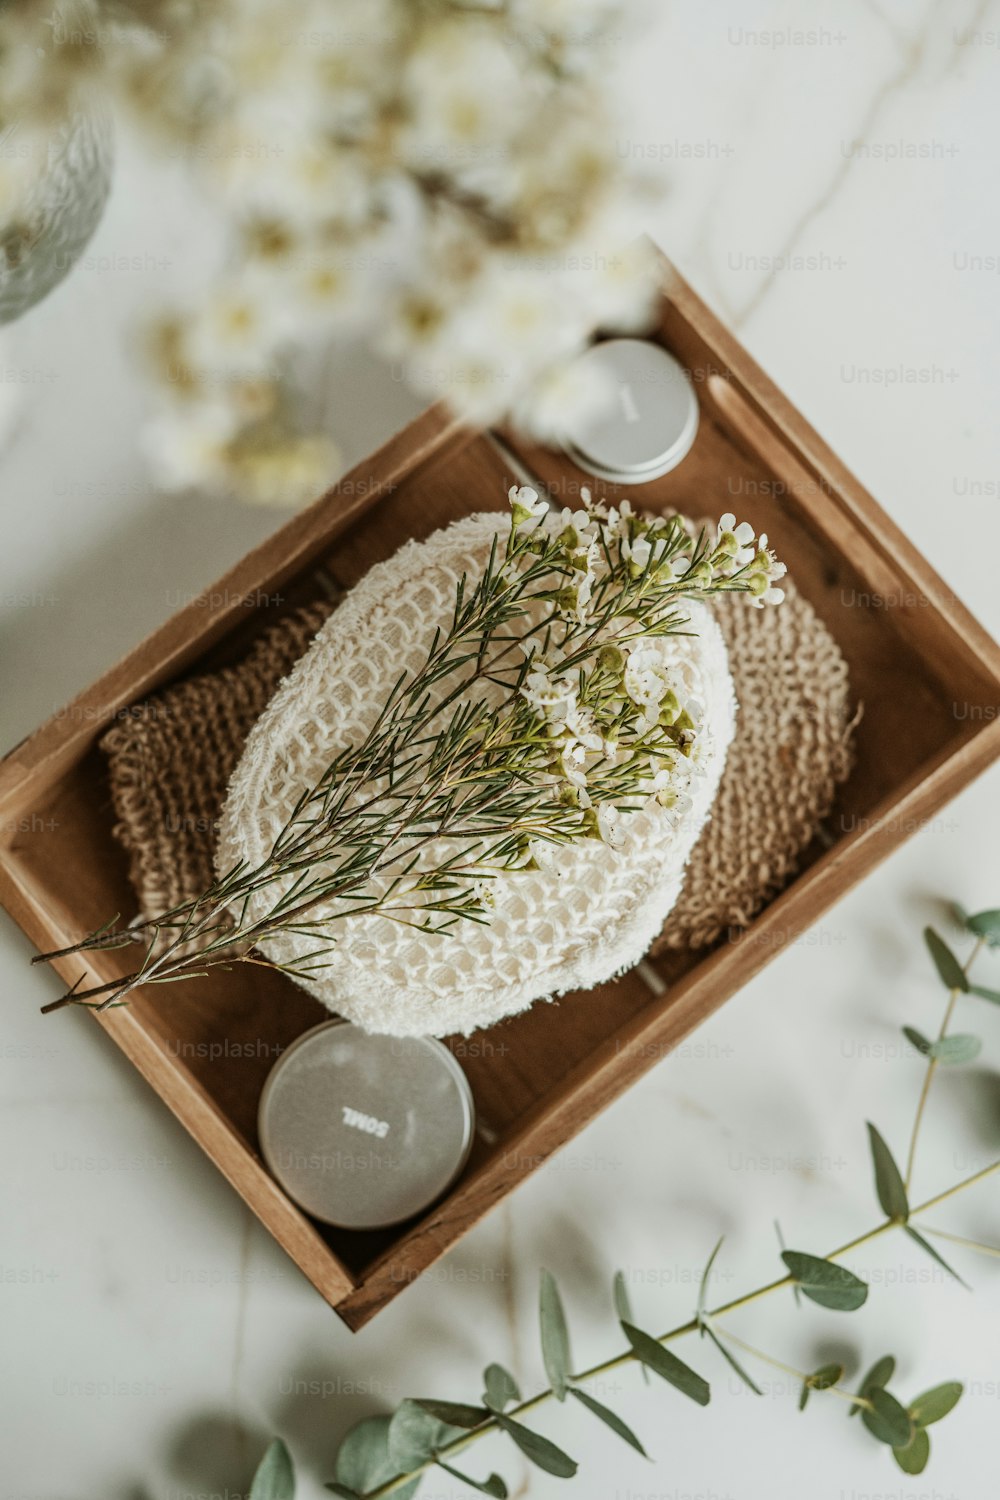 un vassoio di legno con un cappello lavorato a maglia e candele